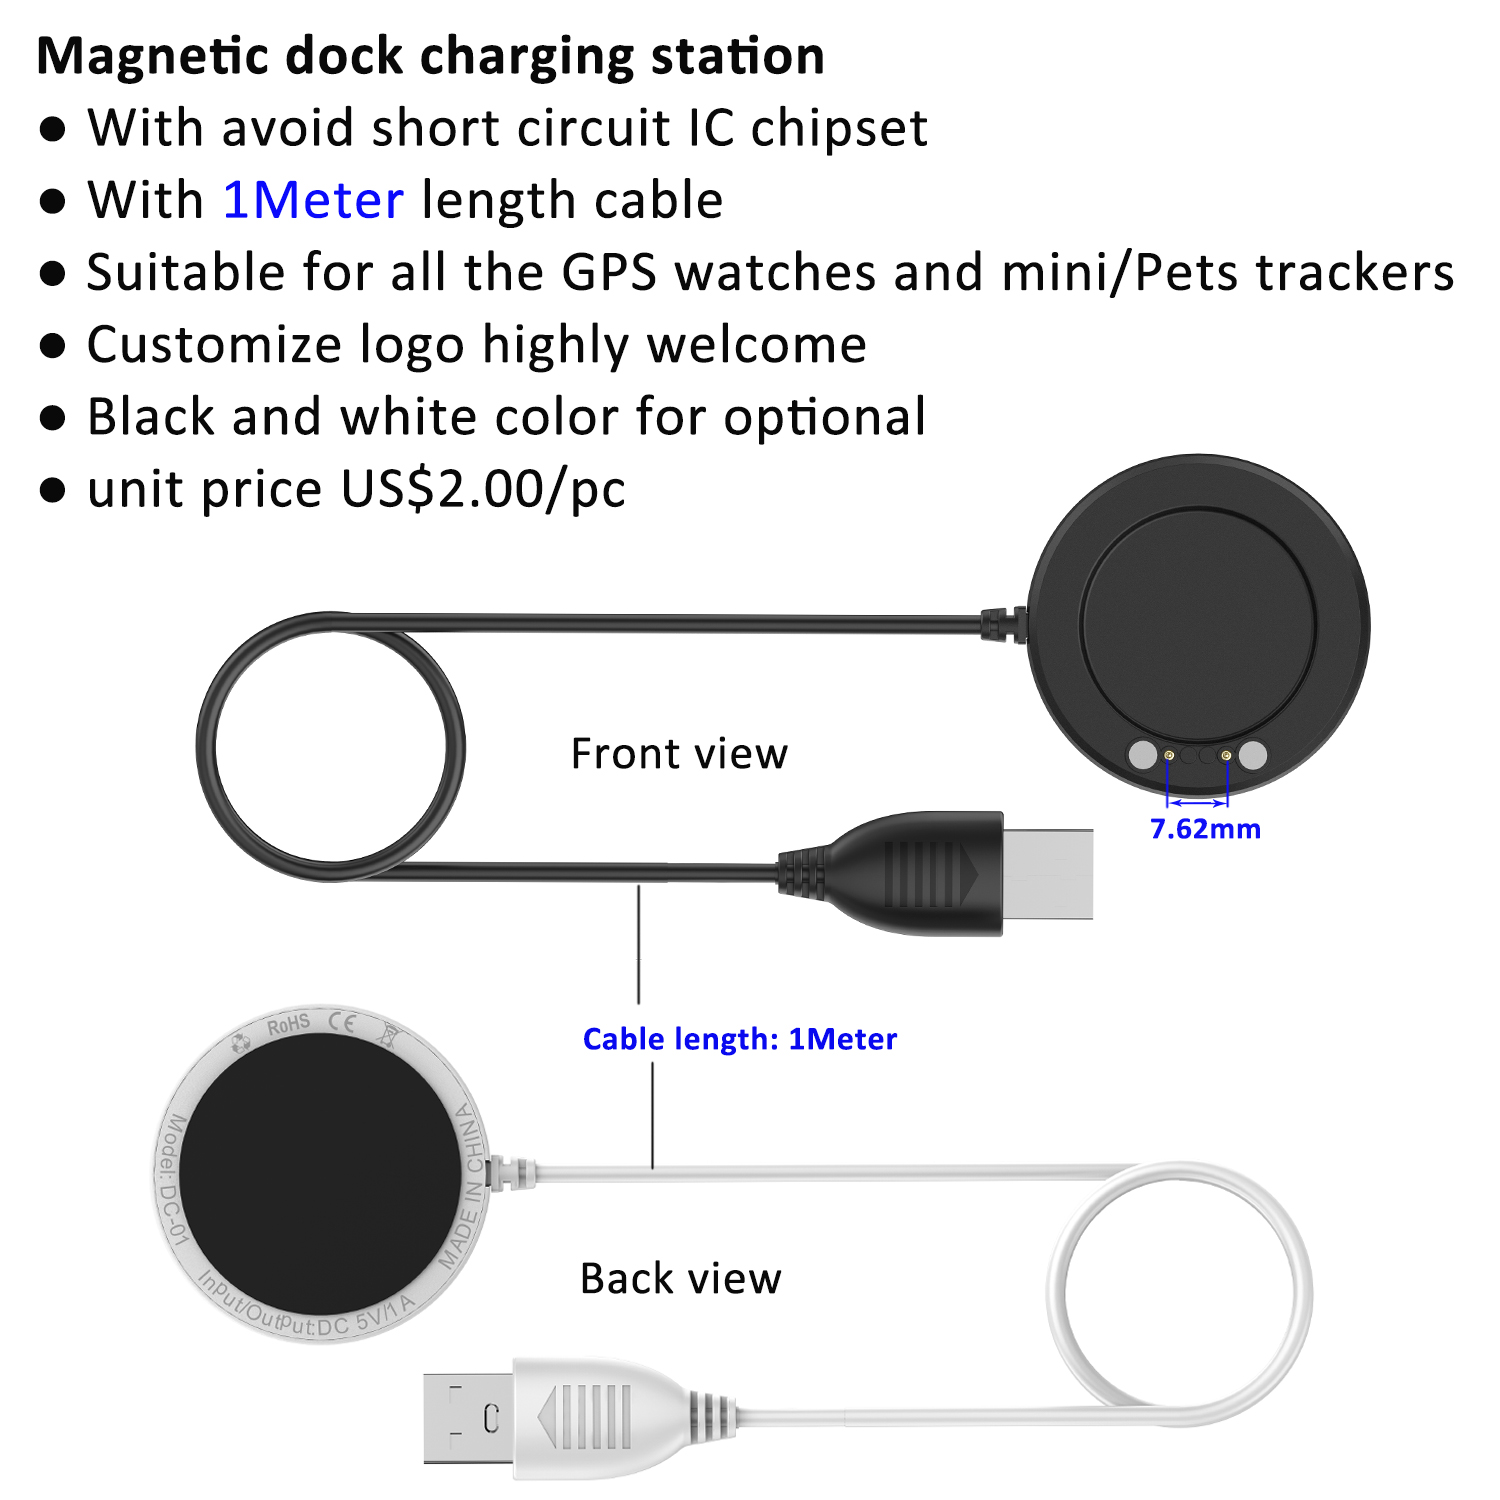 Waterproof 4G Kids GPS Tracker Smart Watch Y48F